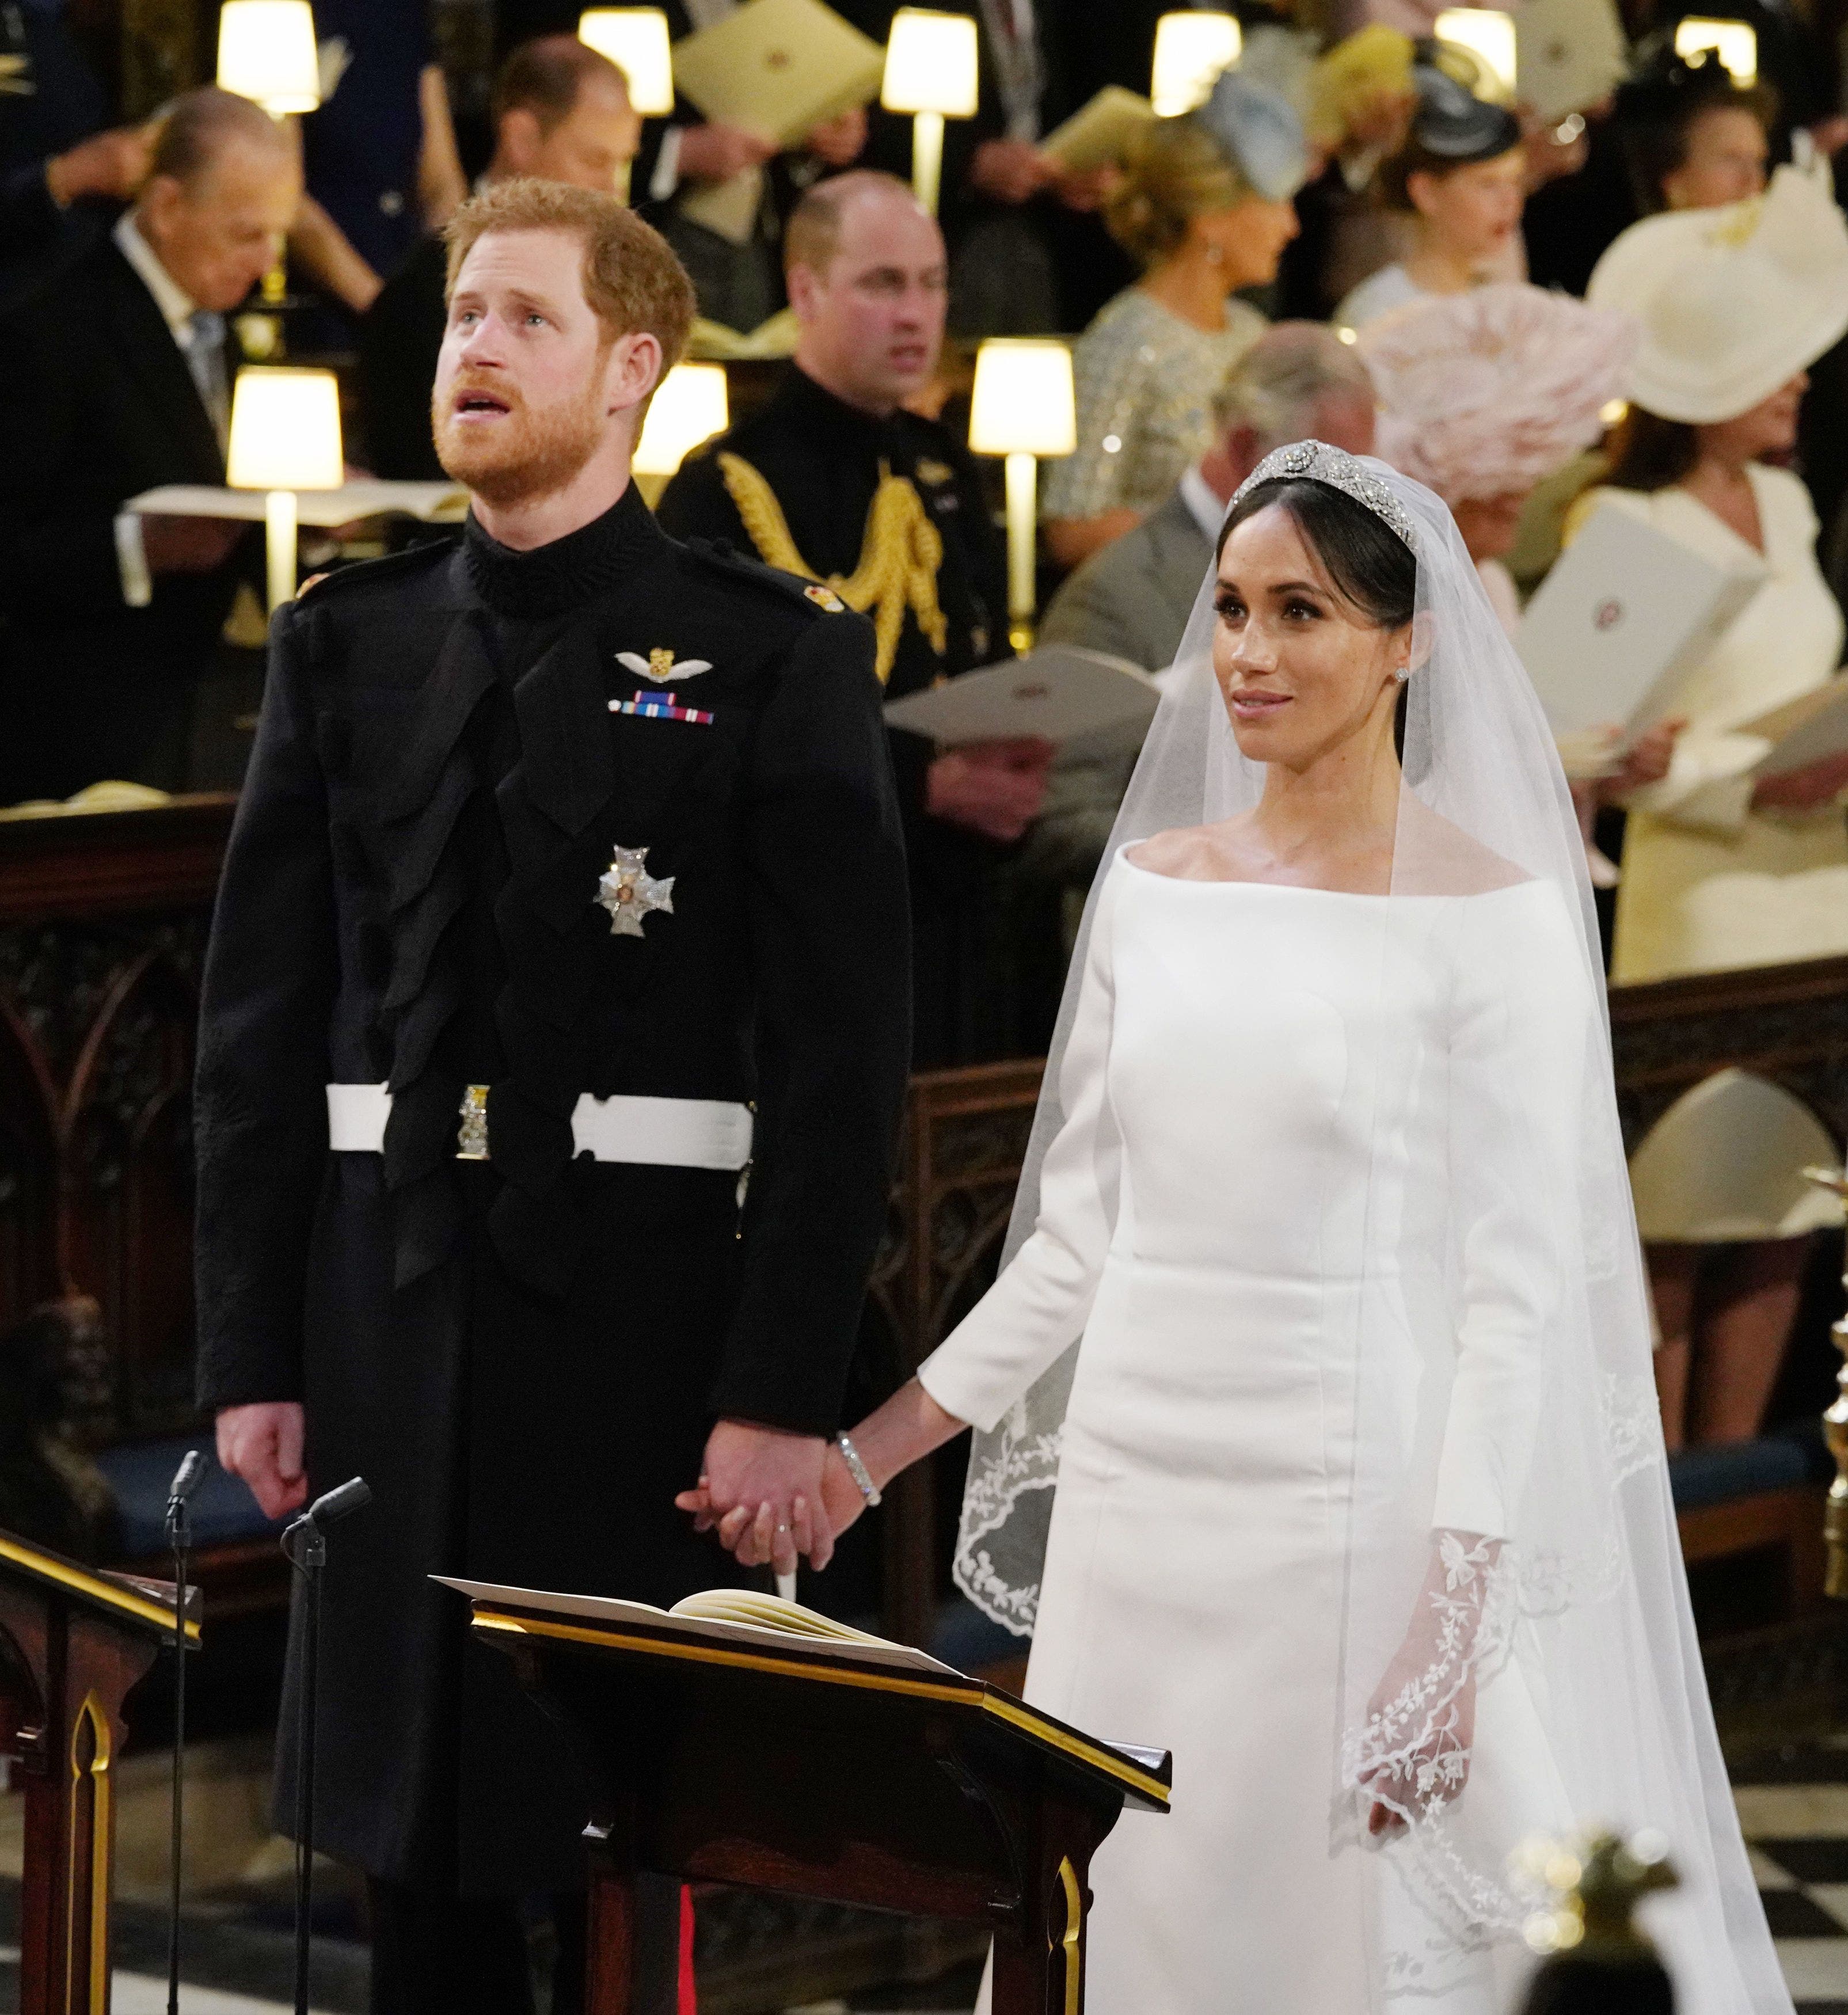 El prÃ­ncipe Harry, Duque de Sussex (L) y la prometida estadounidense del prÃ­ncipe heredero Harry Meghan Markle se reÃºnen en el Altar Mayor durante su ceremonia de boda en la Capilla de San Jorge, en el Castillo de Windsor, en Windsor, el 19 de mayo de 2018. / AFP